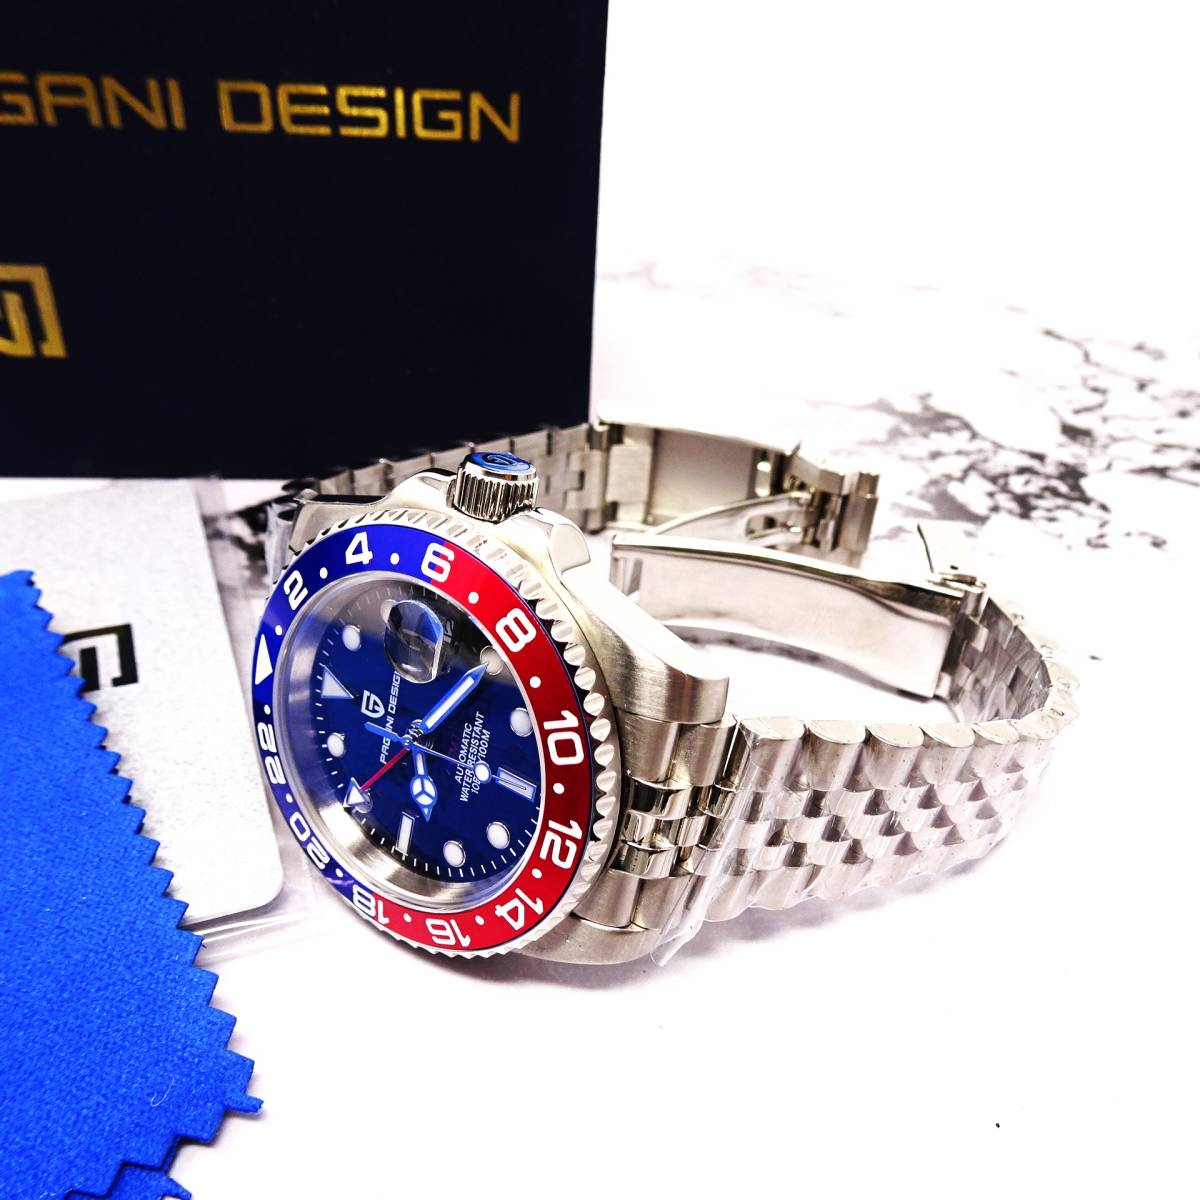 送料無料・新品・パガーニデザイン・メンズ・機械式腕時計 ・GMT針オマージュウオッチ・ペプシベゼル・ジュビリーメタルストラップPD-1662_画像2